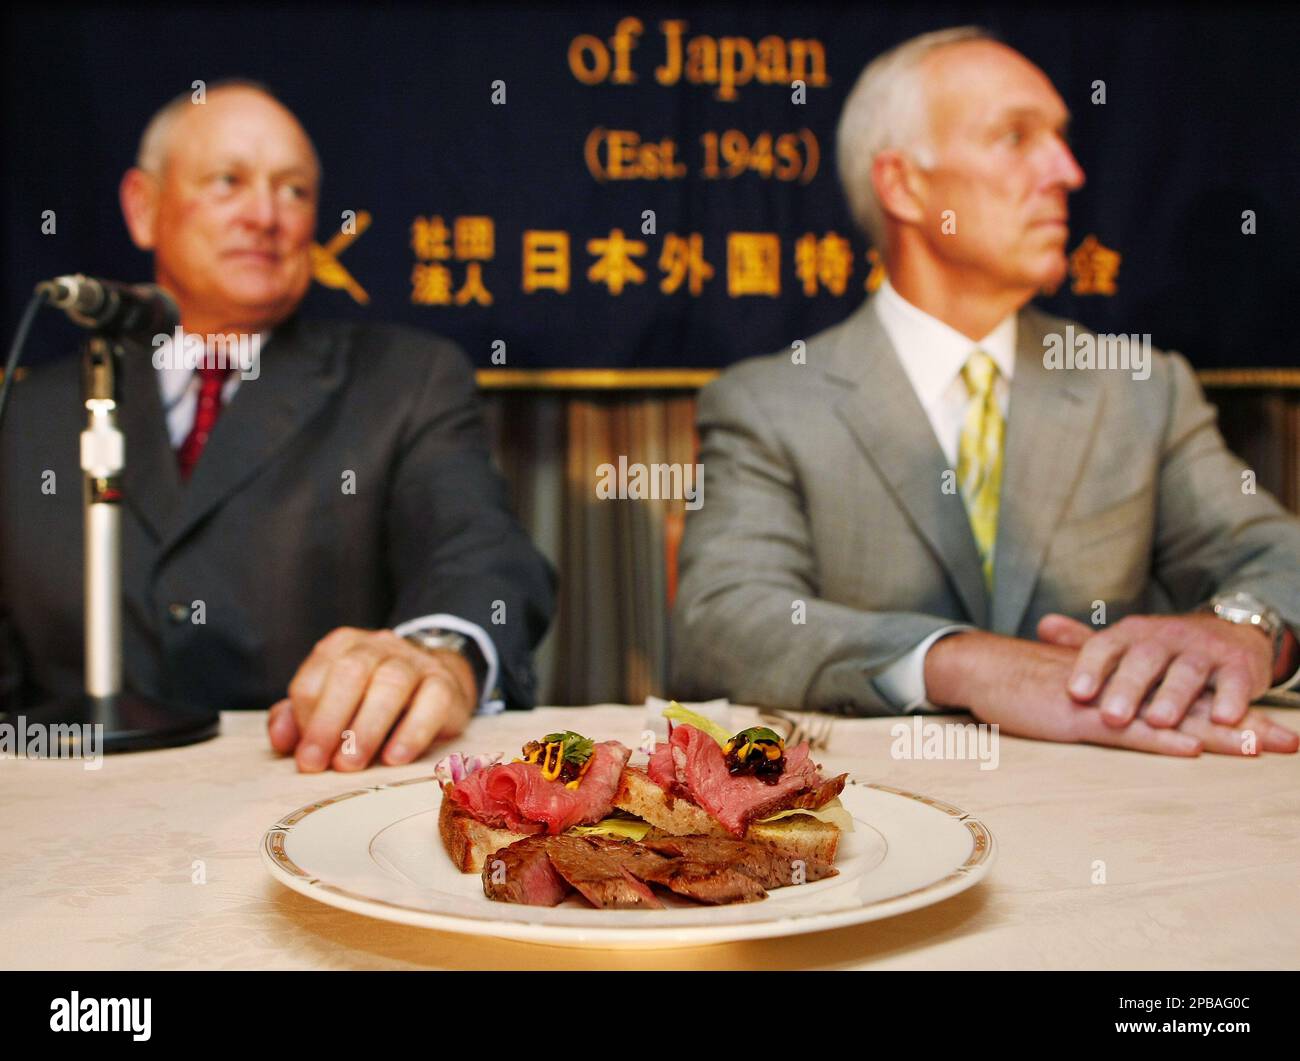 Nolan Ryan's Blog: Promoting Beef in Japan